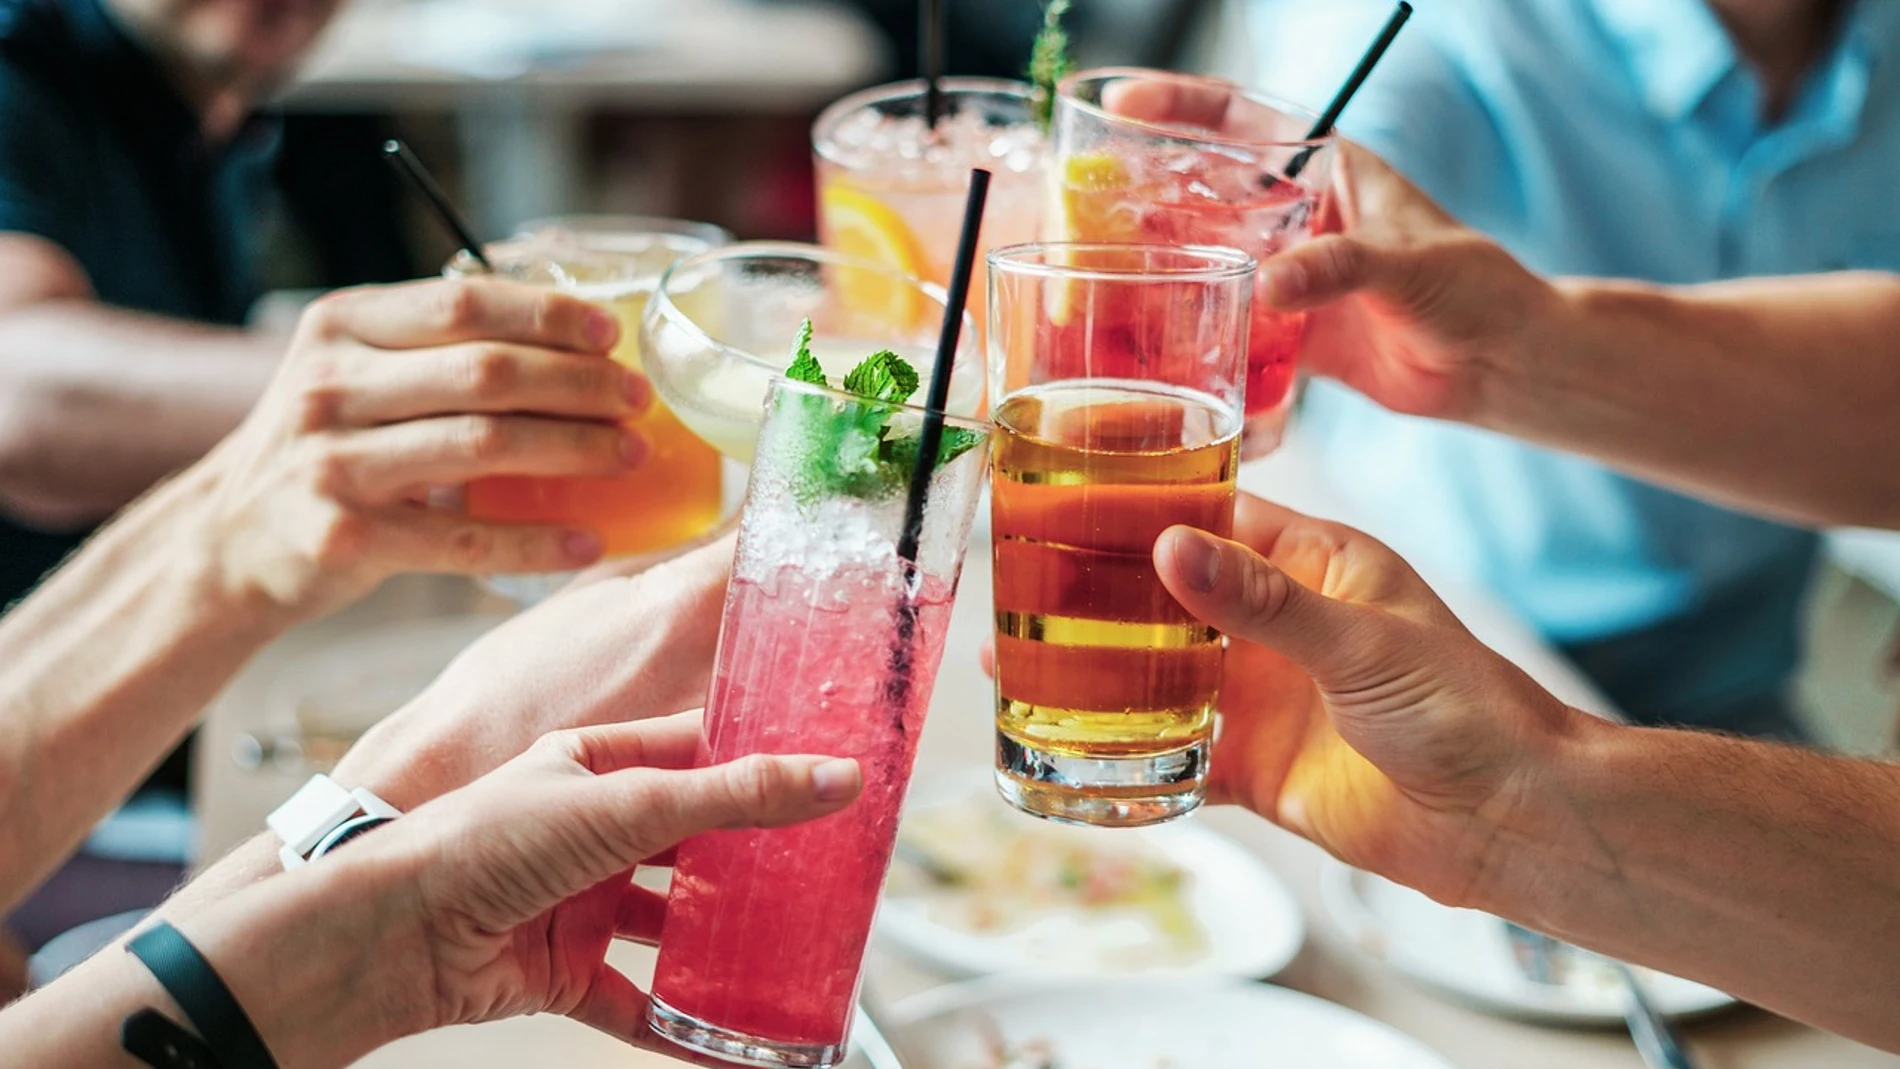 La bebida con mayor proporción de alcohol del mundo es la absenta. Aunque hay algunas marchas comerciales de otro tipo de bebidas que superan su graduación